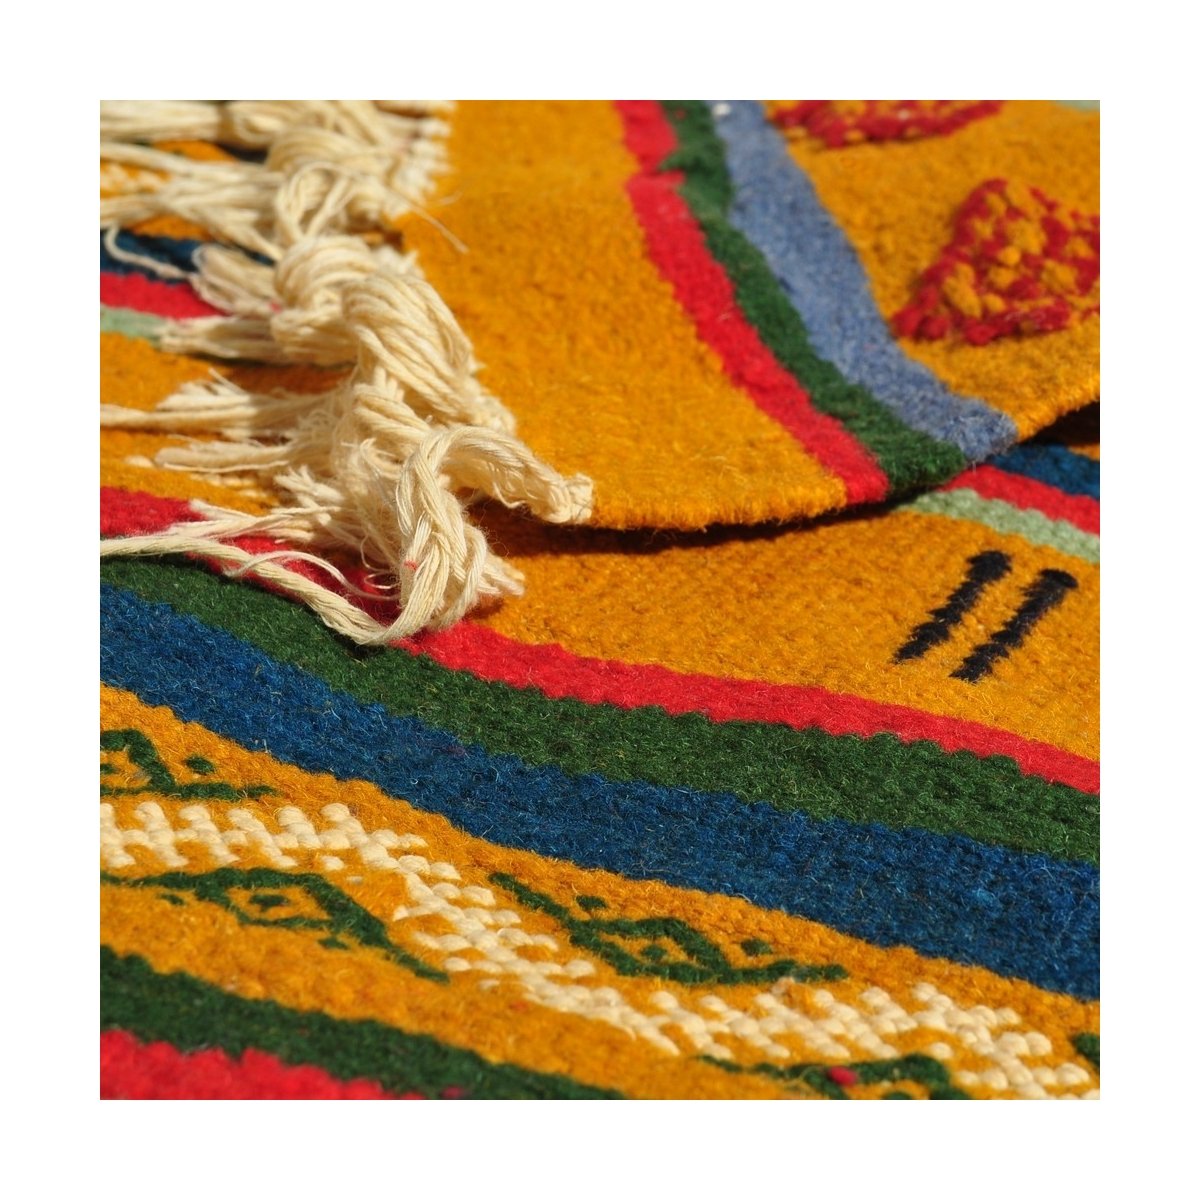 Berber tapijt Tapijt Kilim Ouarzazate 125x245 Geel/Veelkleurig (Handgeweven, Wol, Tunesië) Tunesisch kilimdeken, Marokkaanse sti